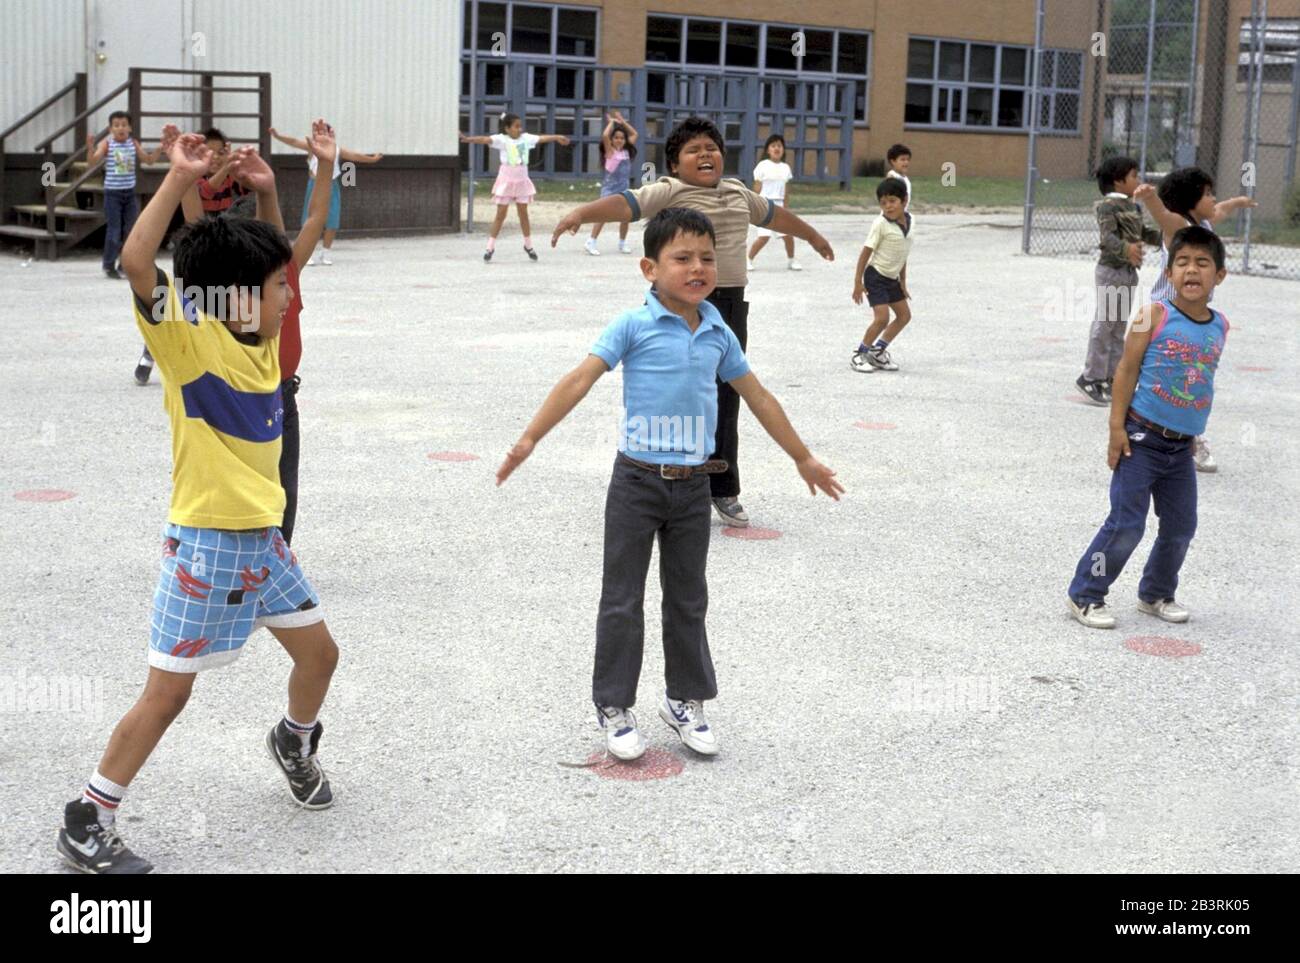 San Antonio, Texas USA, um 1992: Schulfinanzierungskrise in Texas -- Grundschüler springen während der Sportausbildung an der Frey School im chronisch unterfinanzierten Edgewood School District auf einer schlecht gewarteten Asphaltfläche Hampelmänner. ©Bob Daemmrich Stockfoto